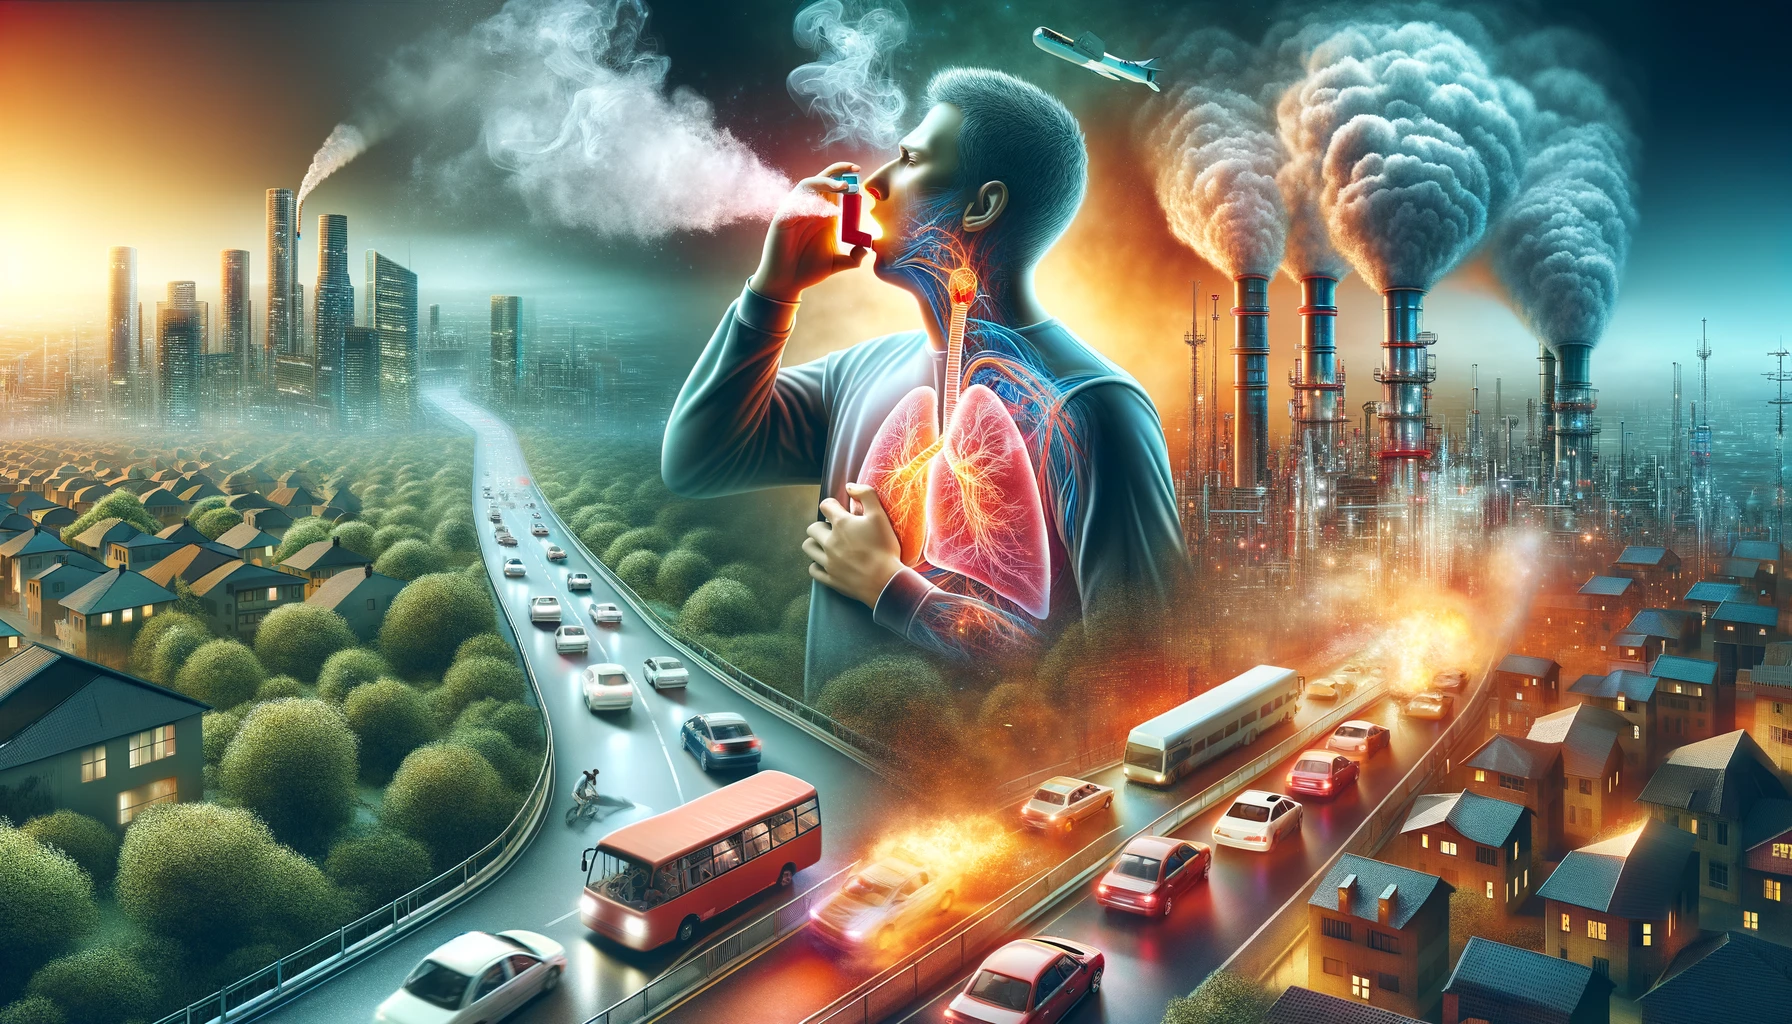 De rol van allergenen in verband met luchtvervuiling en ademhalingsklachten